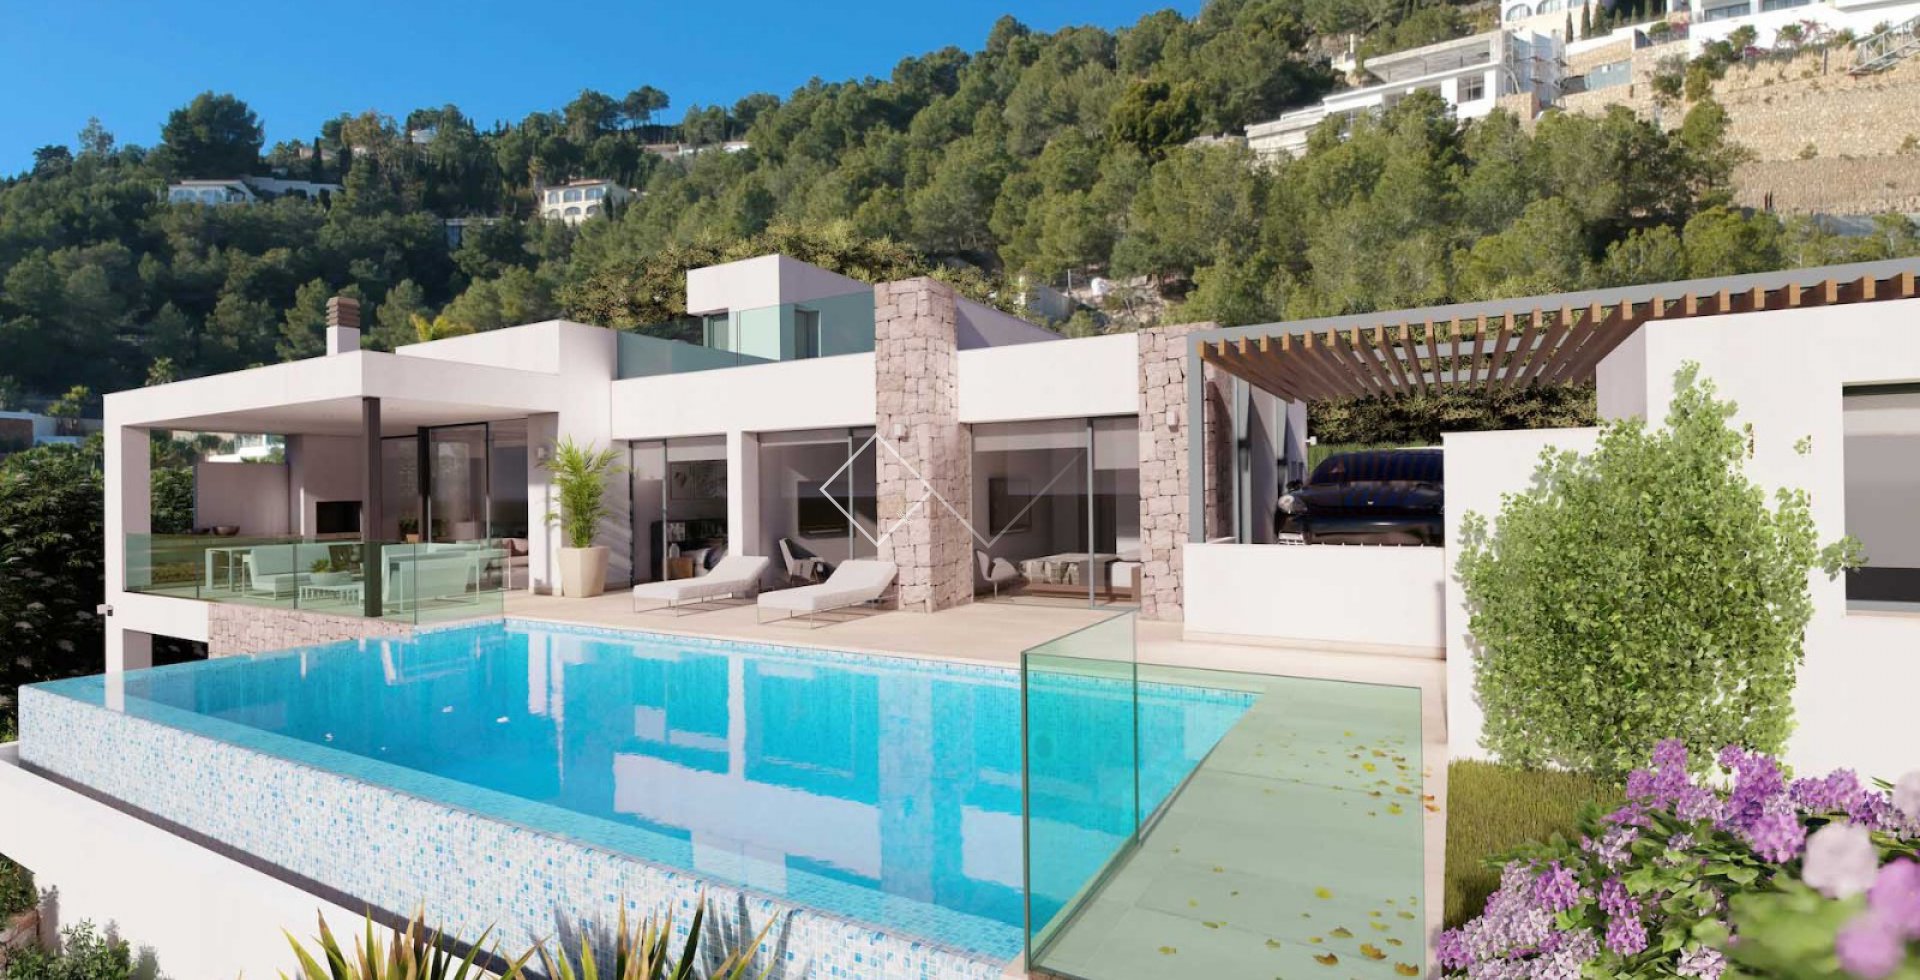 casa piscina - Proyecto: villa moderna con grandes vistas al mar, Benissa